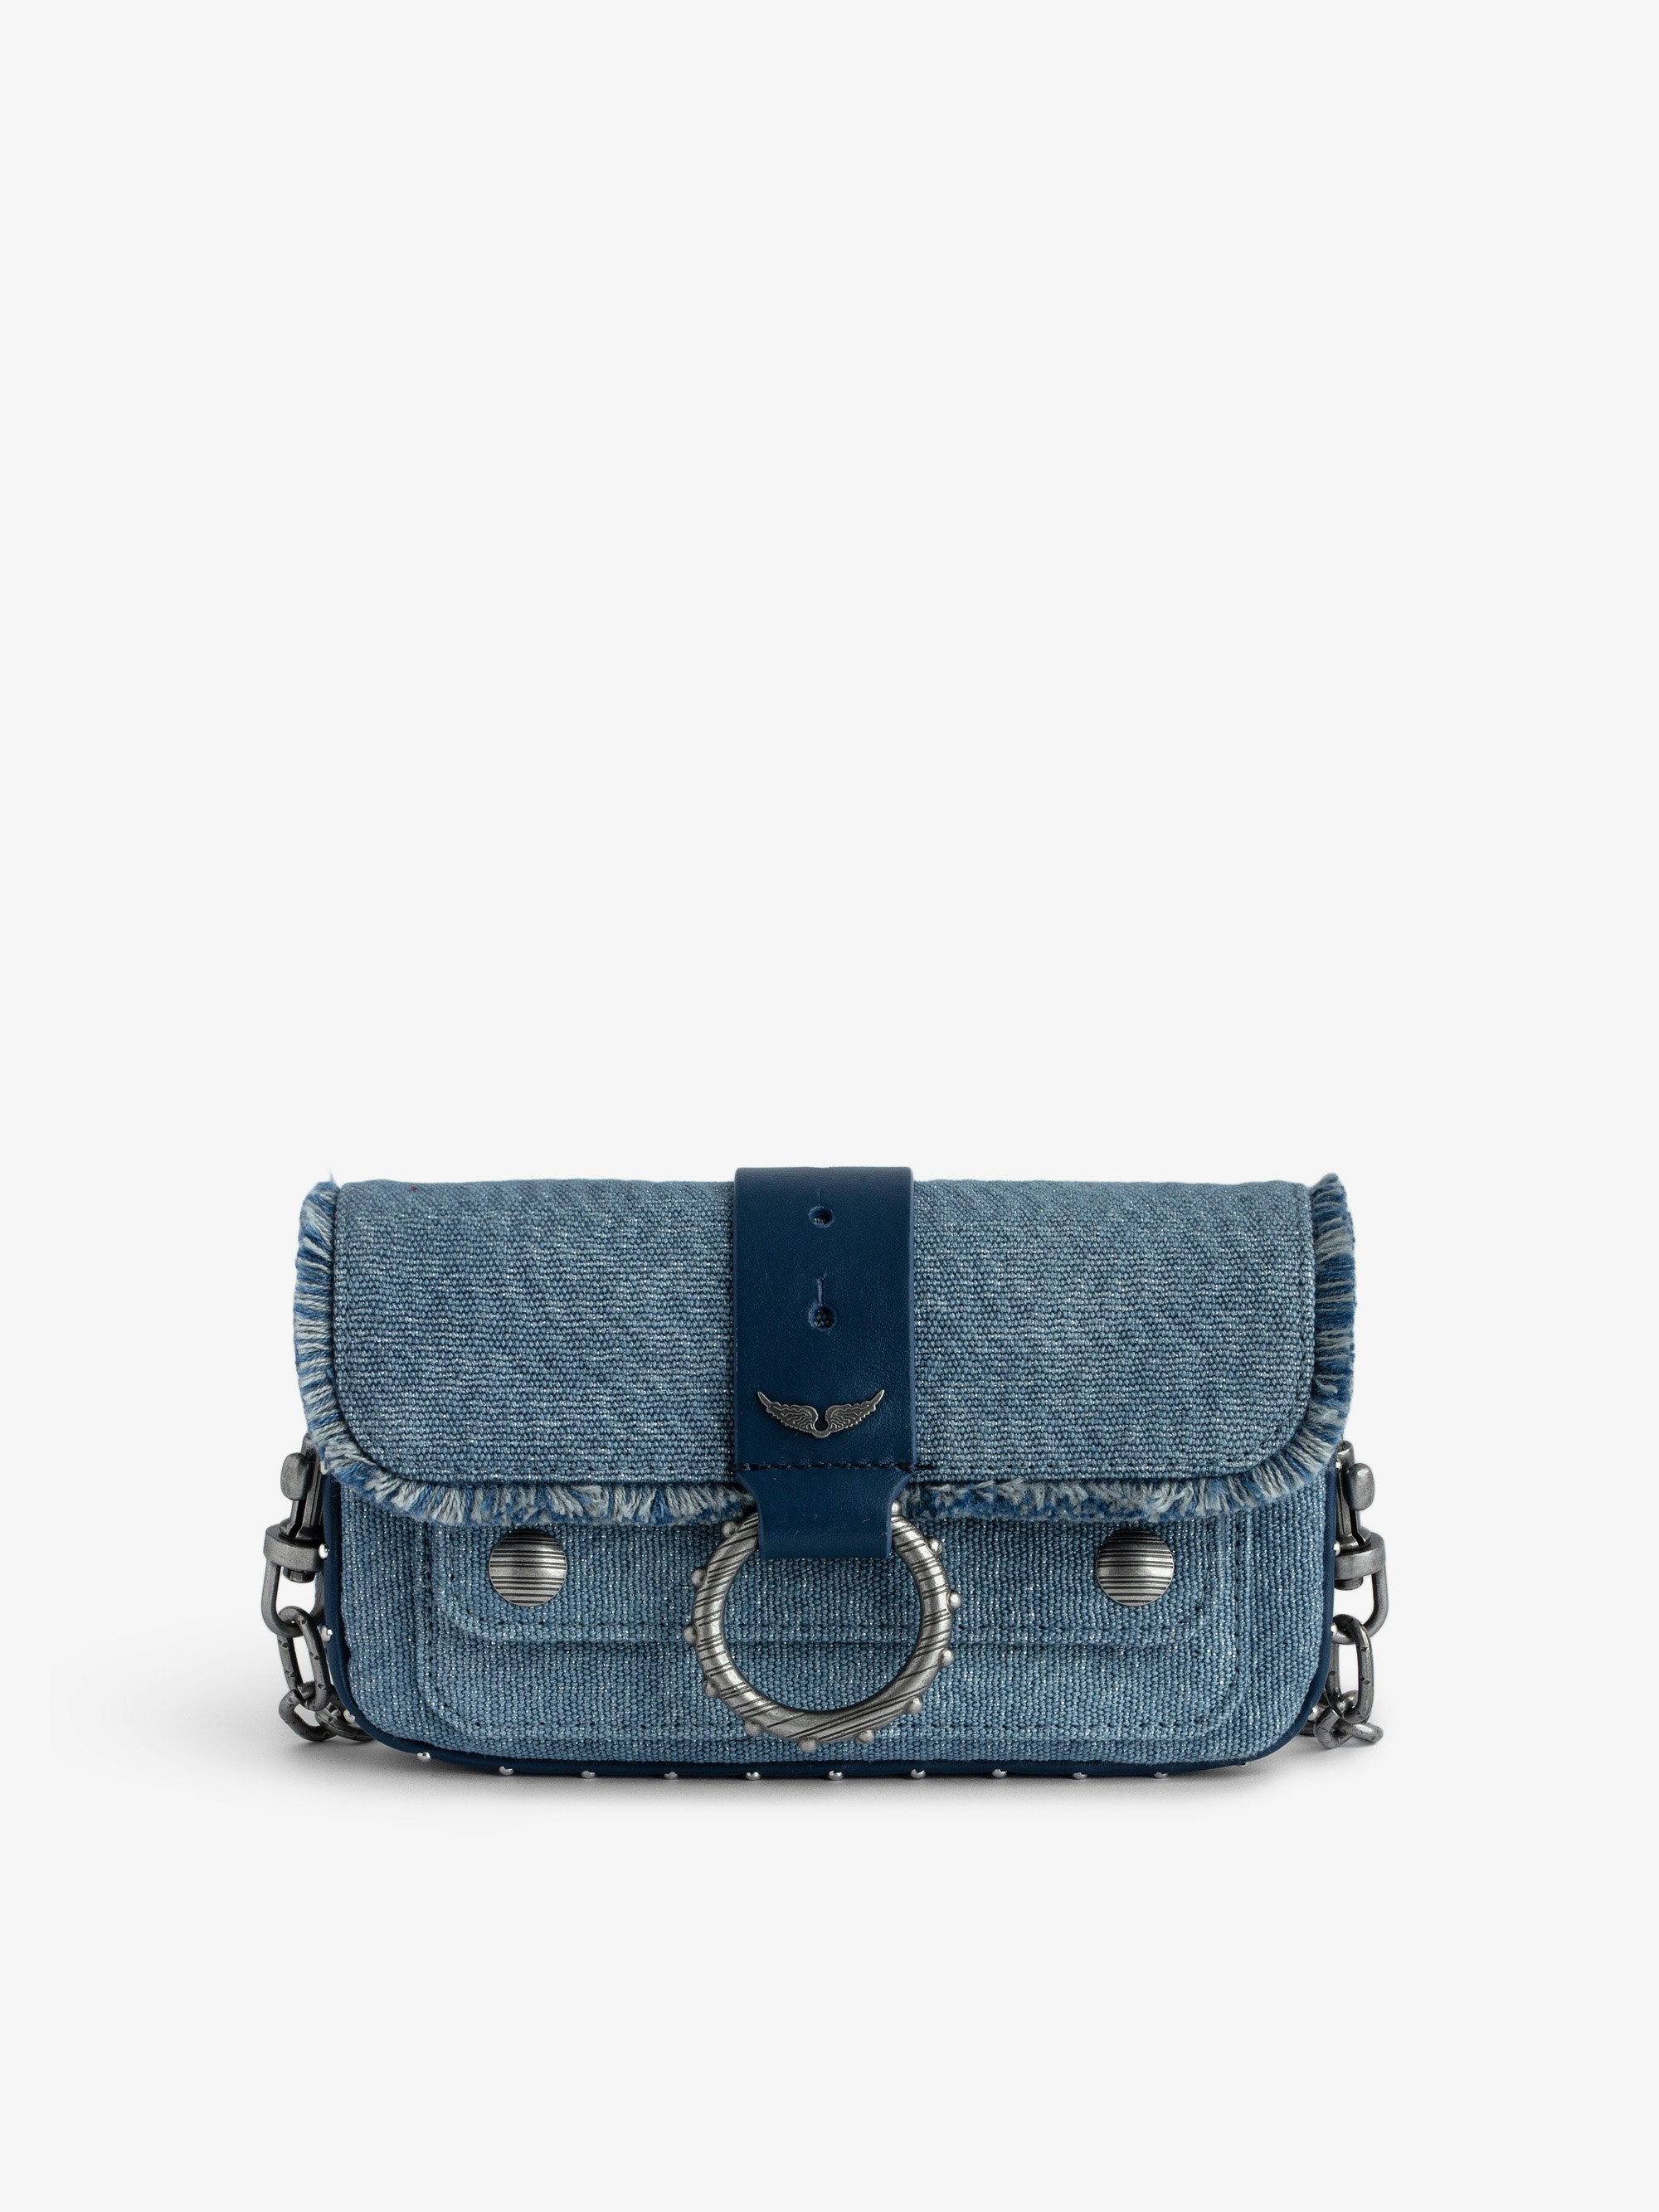 Tasche Kate Wallet Denim - Designed by Kate Moss for Zadig&Voltaire.  Mini-Handtasche aus Glitter-Denim mit Metallkette, Lederschlaufe und Fransen.